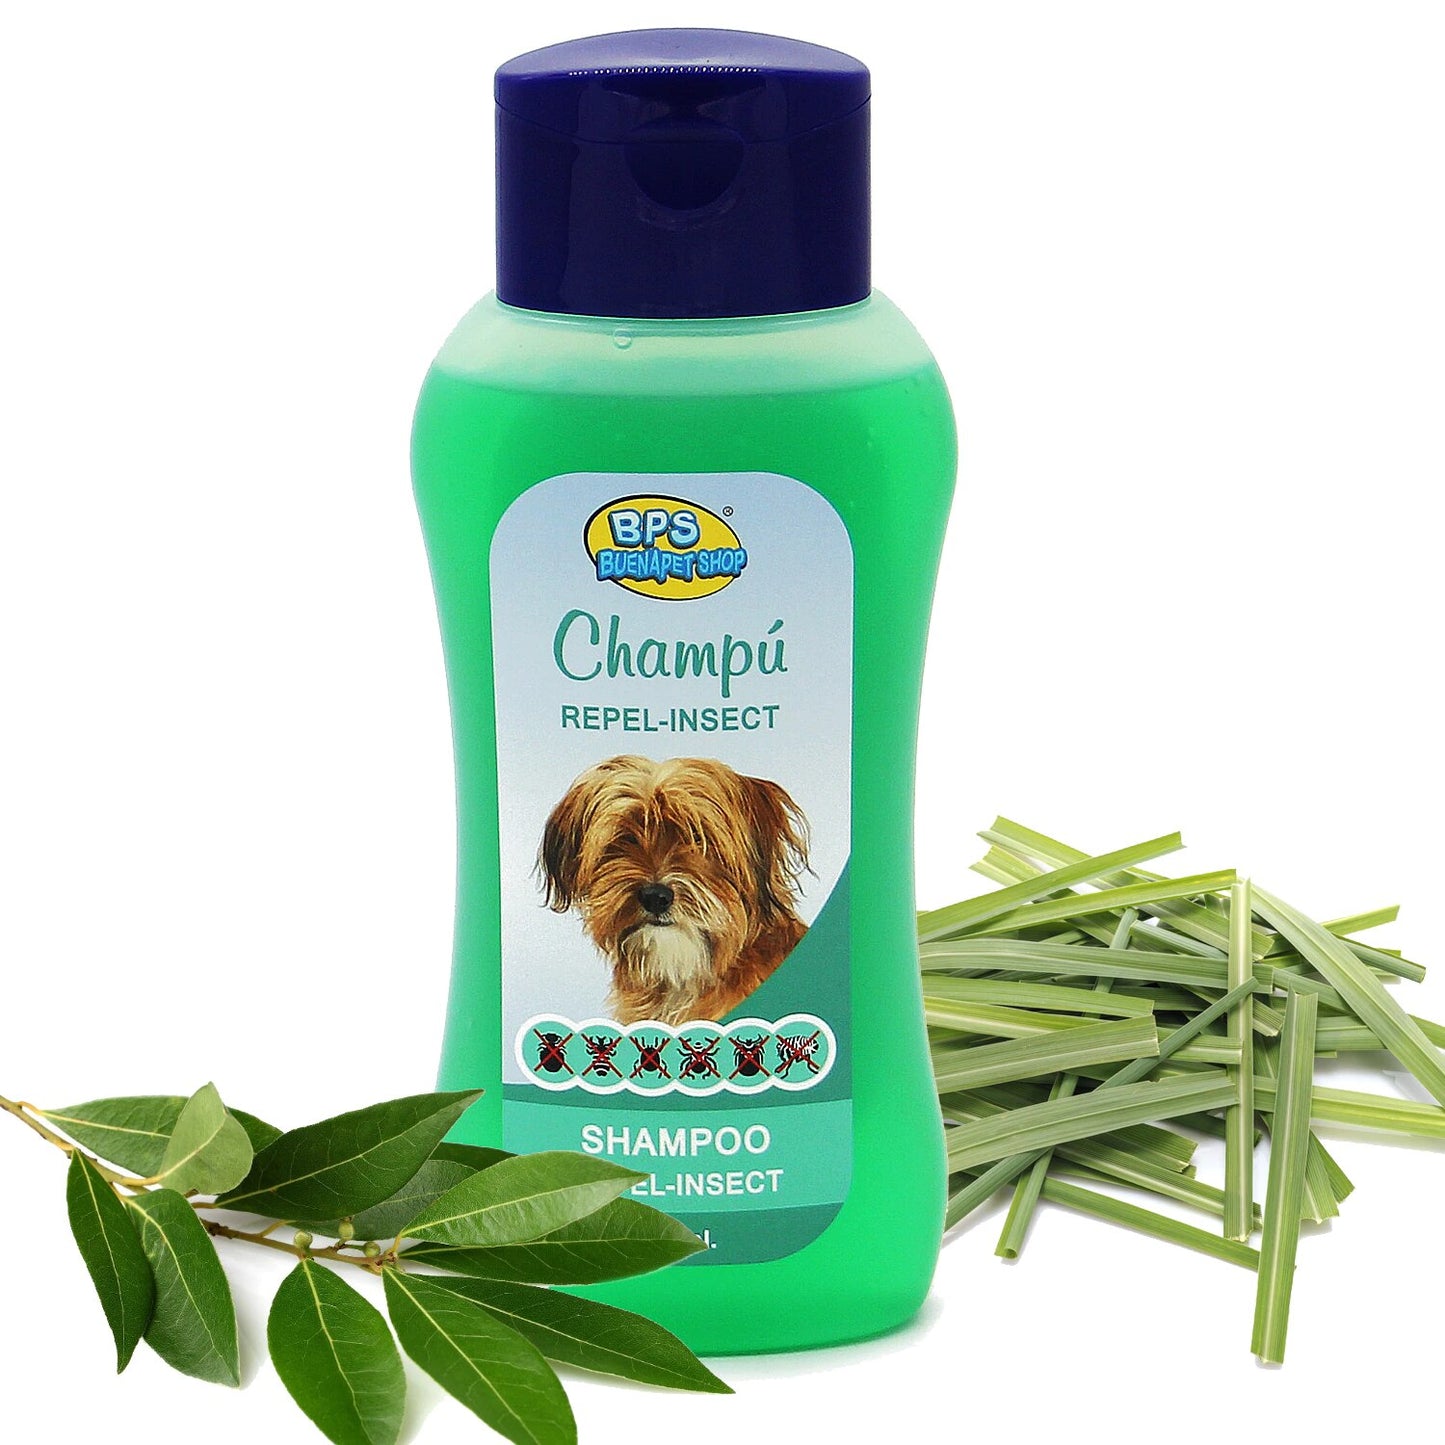 Shampoo y acondicionador animales domésticos seguro y natural.